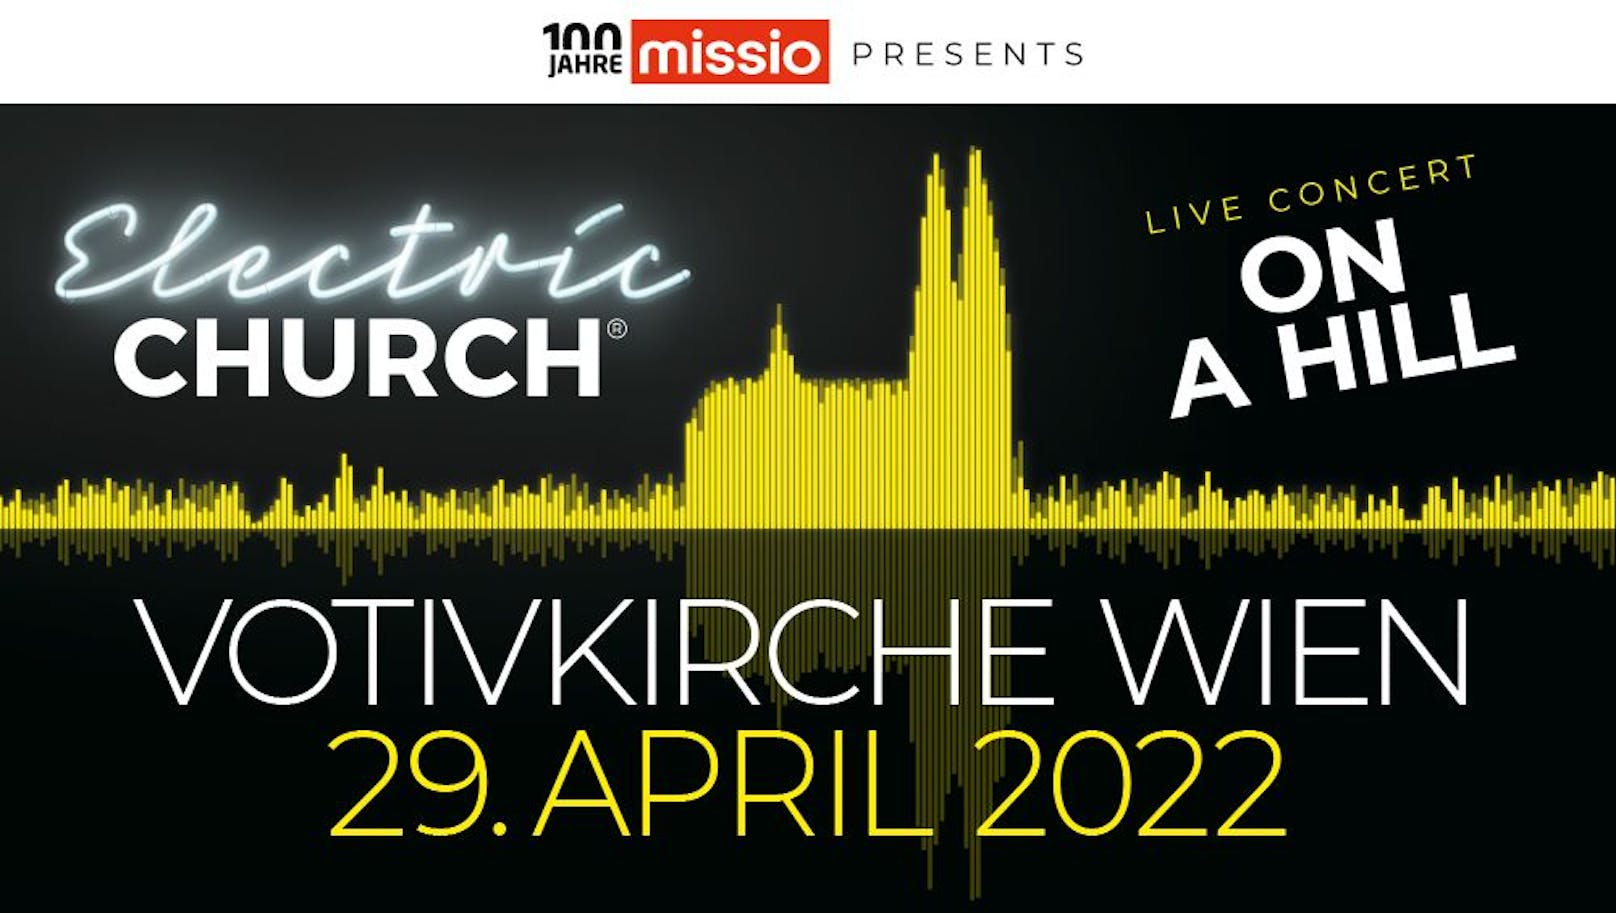 Das neue Konzert der Electric Church ON A HILL gibt es am 29. April in der Votivkirche Wien zu bestaunen.